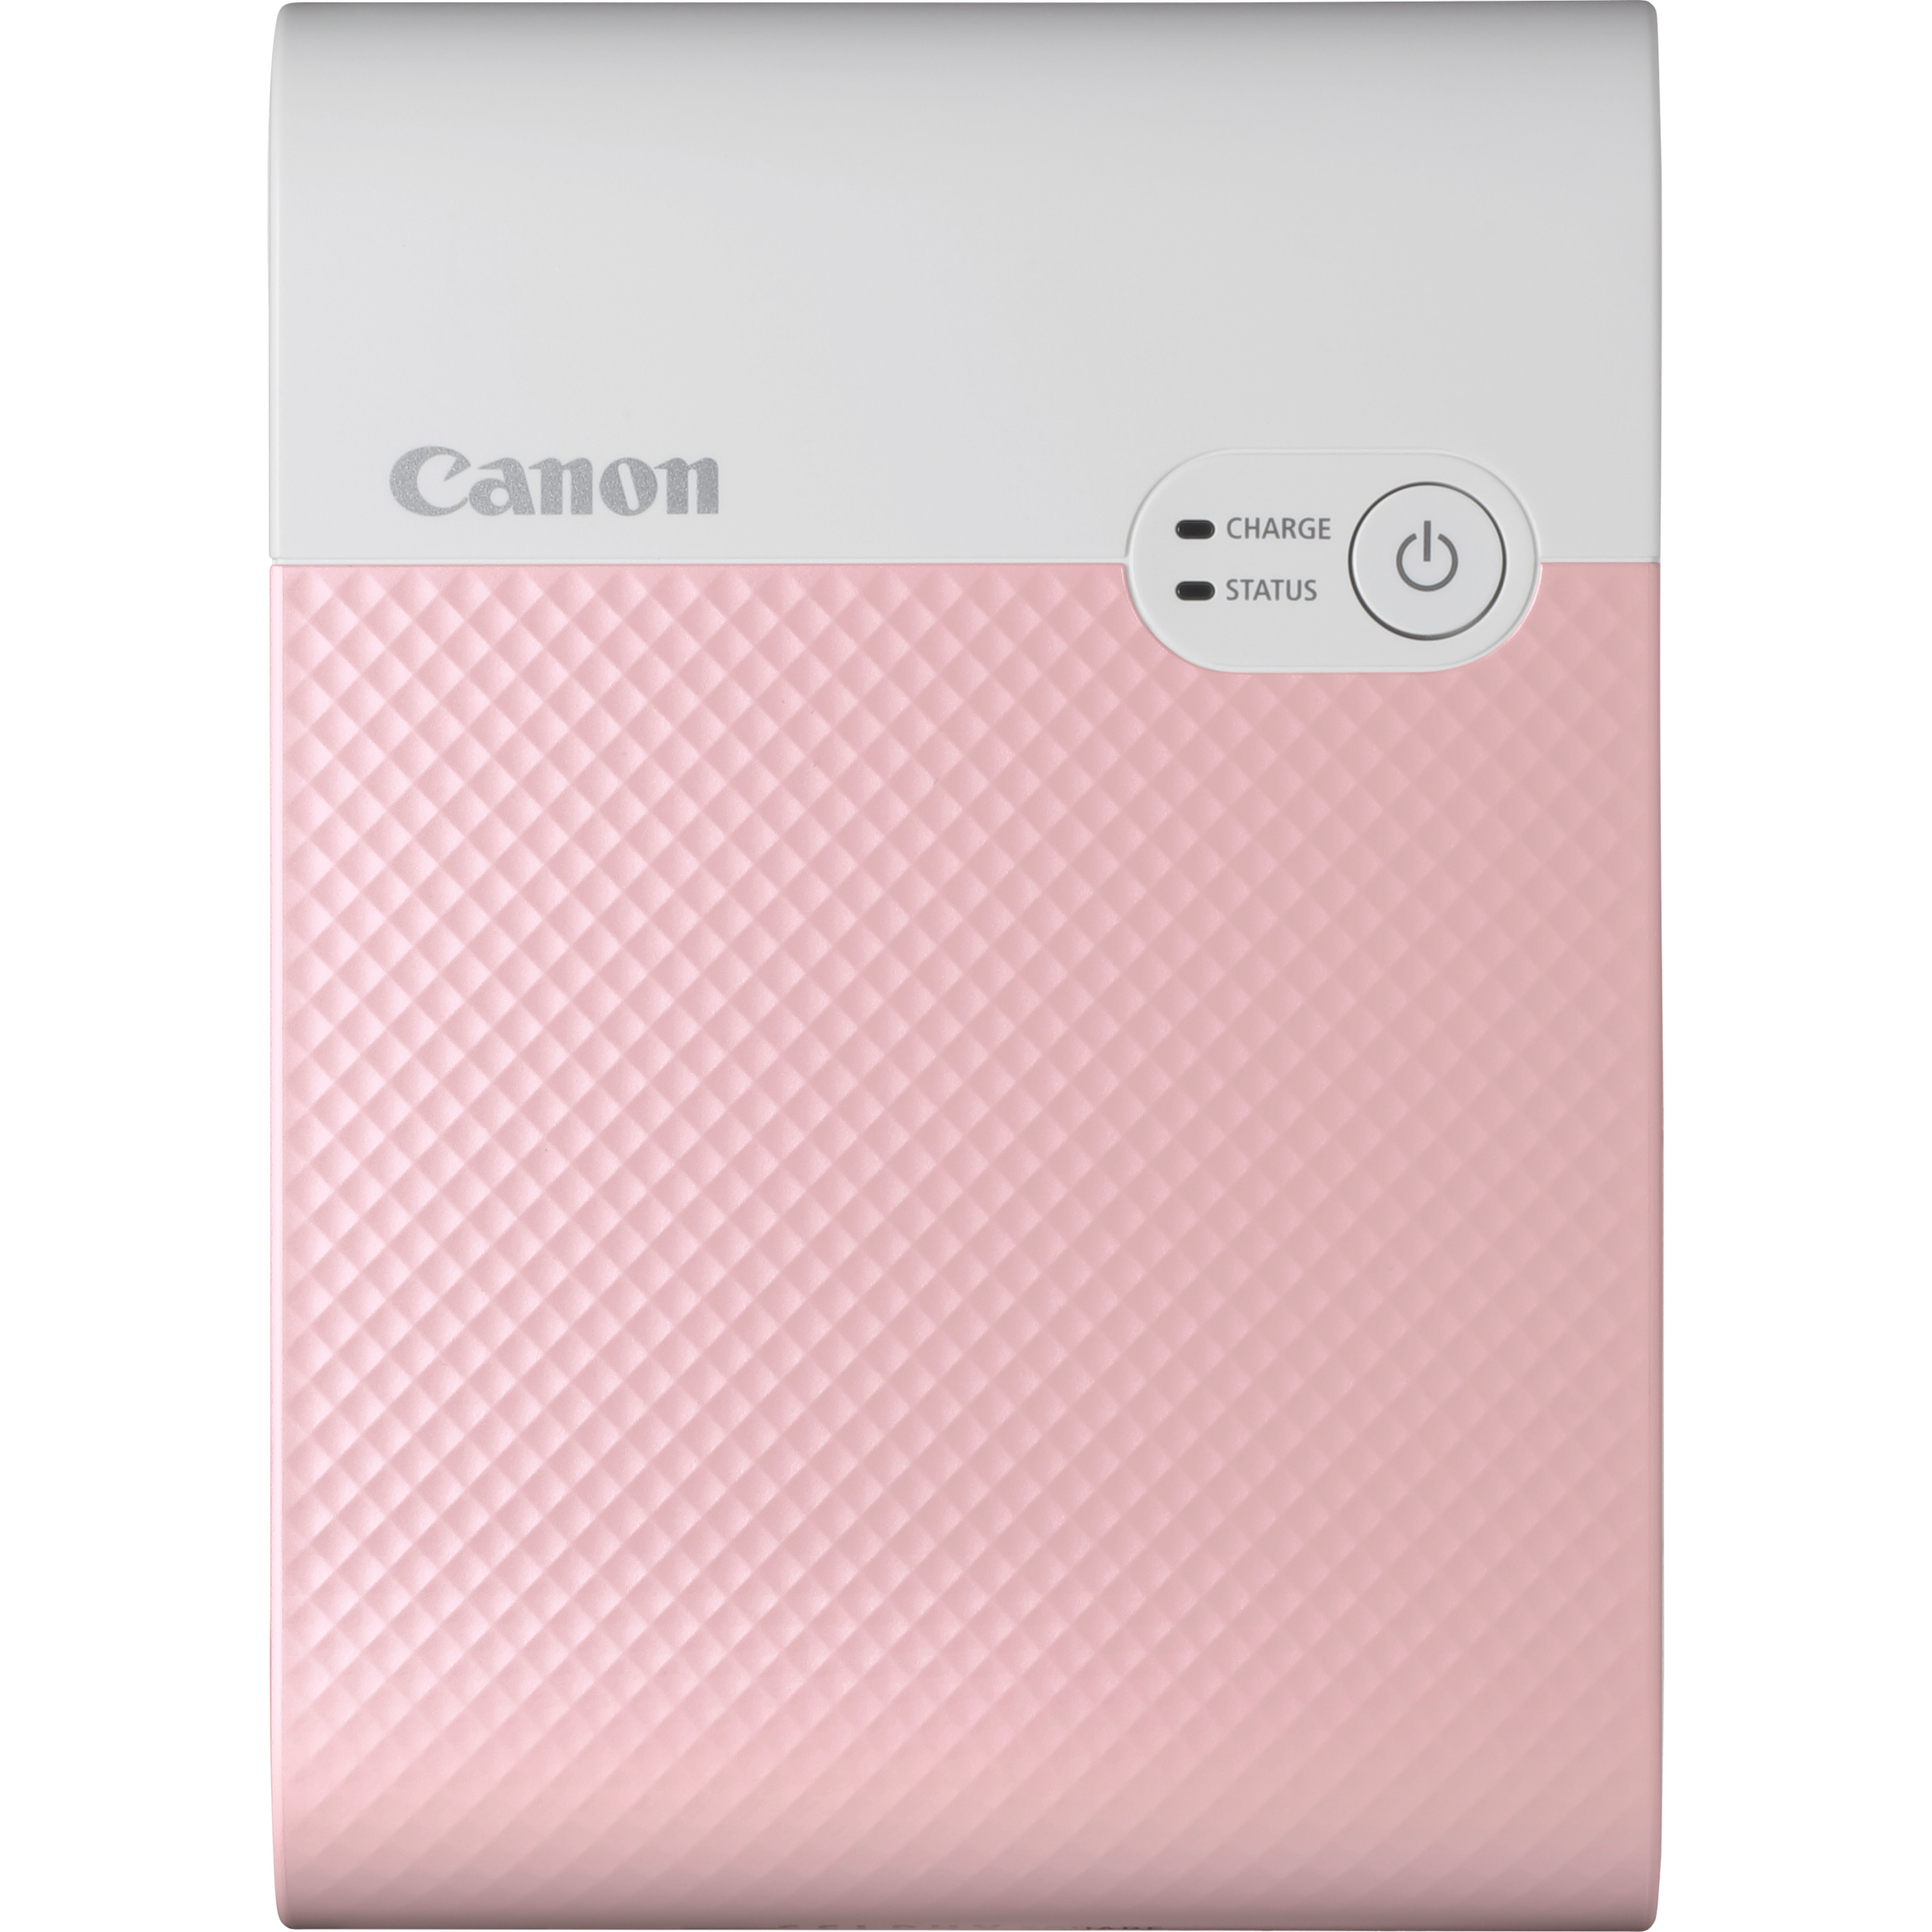 Image of Canon SELPHY Stampante fotografica portatile wireless a colori SQUARE QX10, rosa